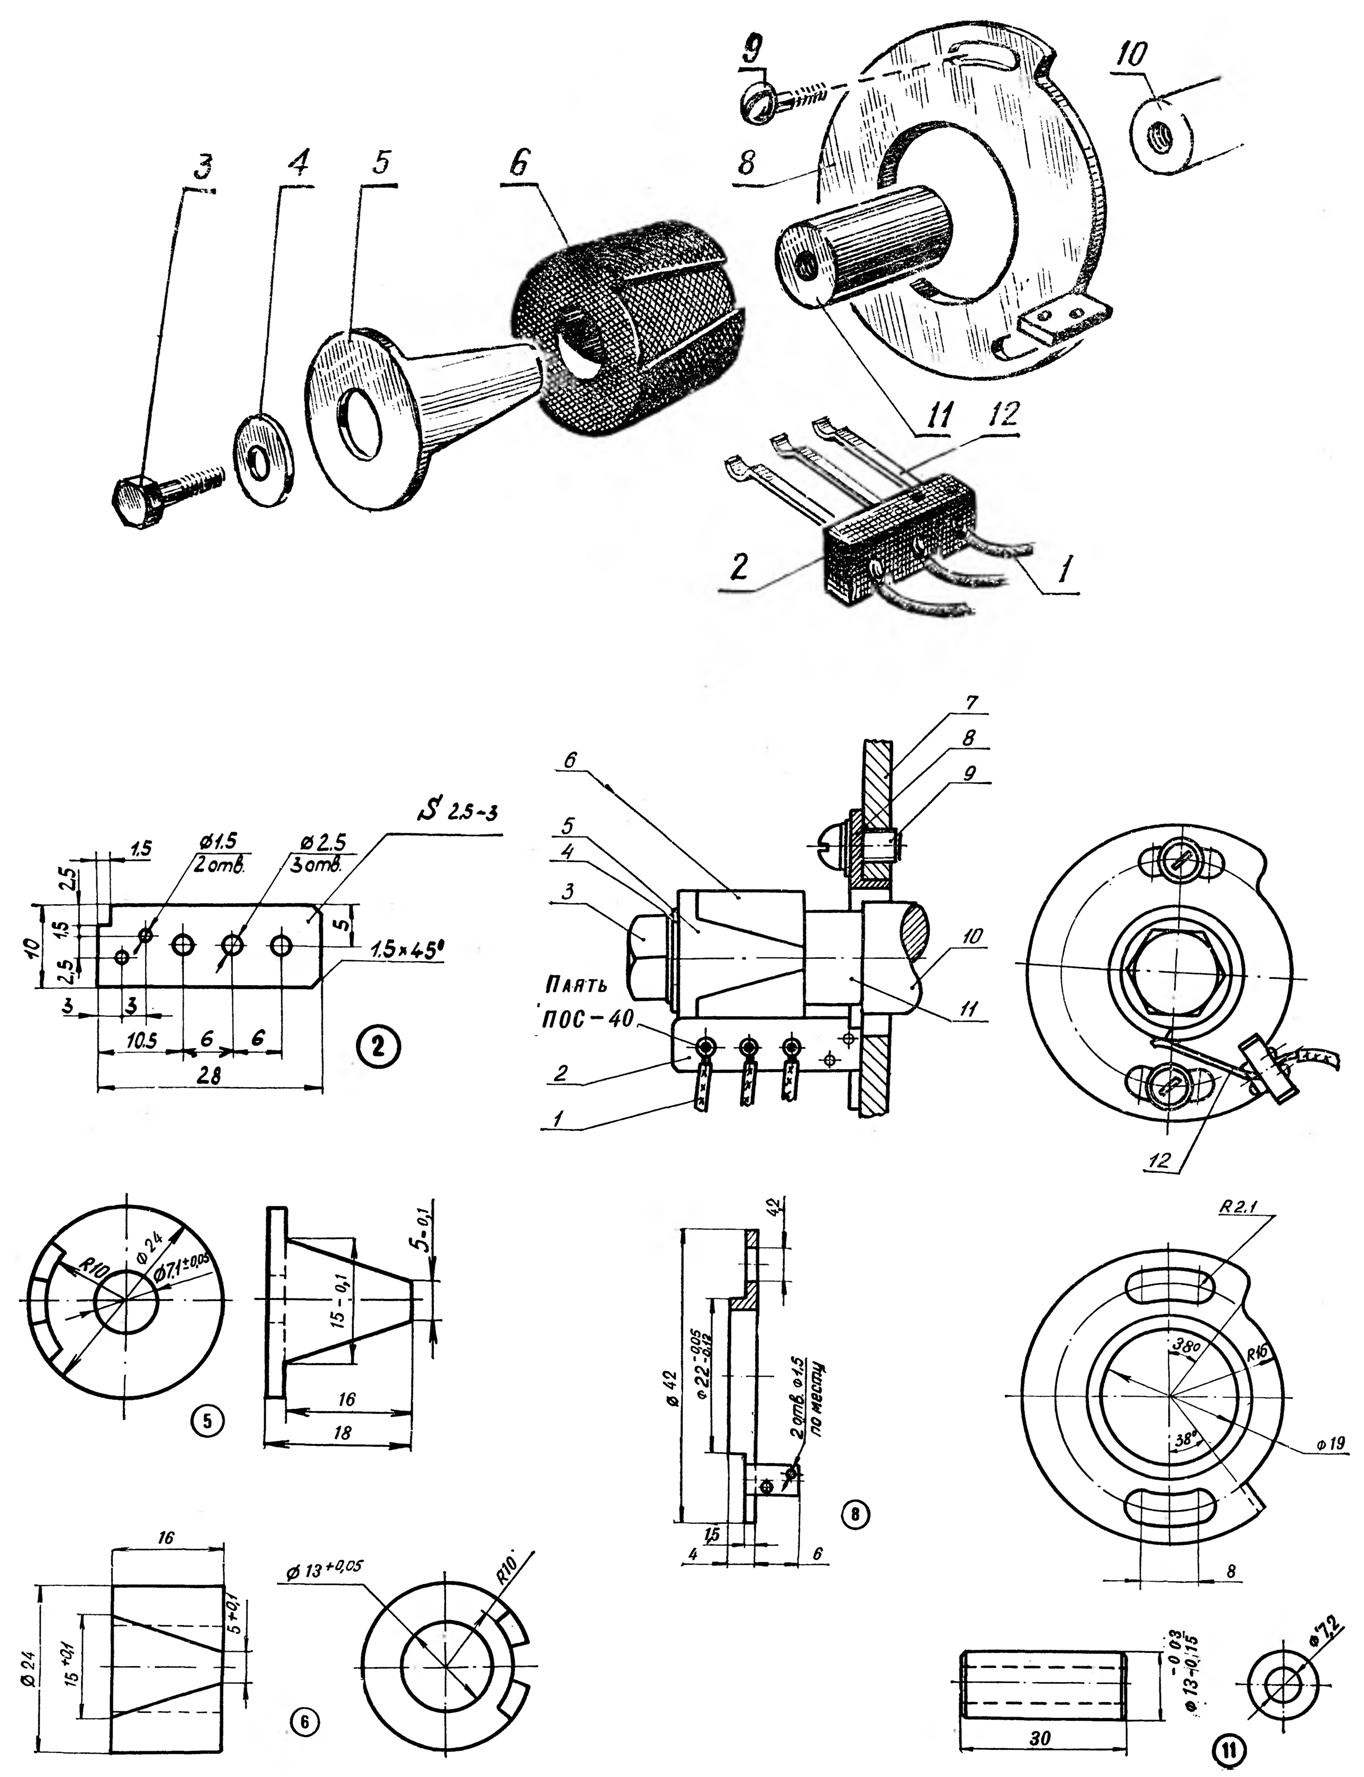 Fig. 4. Device breaker